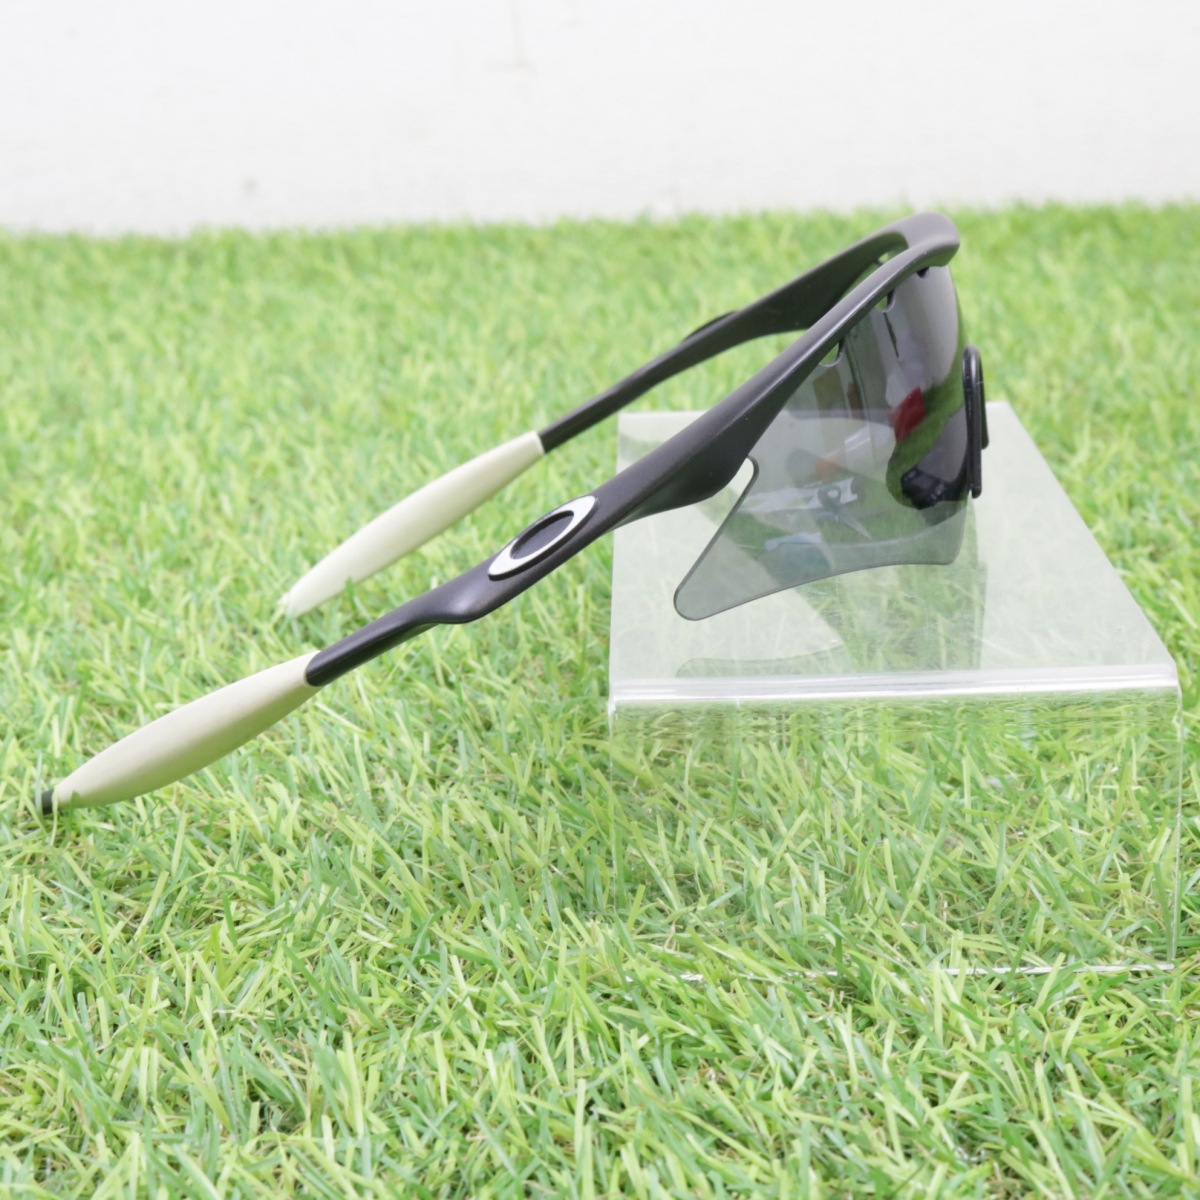 [ пакет имеется ]OAKLEY M FRAME спортивные солнцезащитные очки Oacley белый × черный цвет движение хобби тренировка начинающий mochi беж .n005FCEFR27